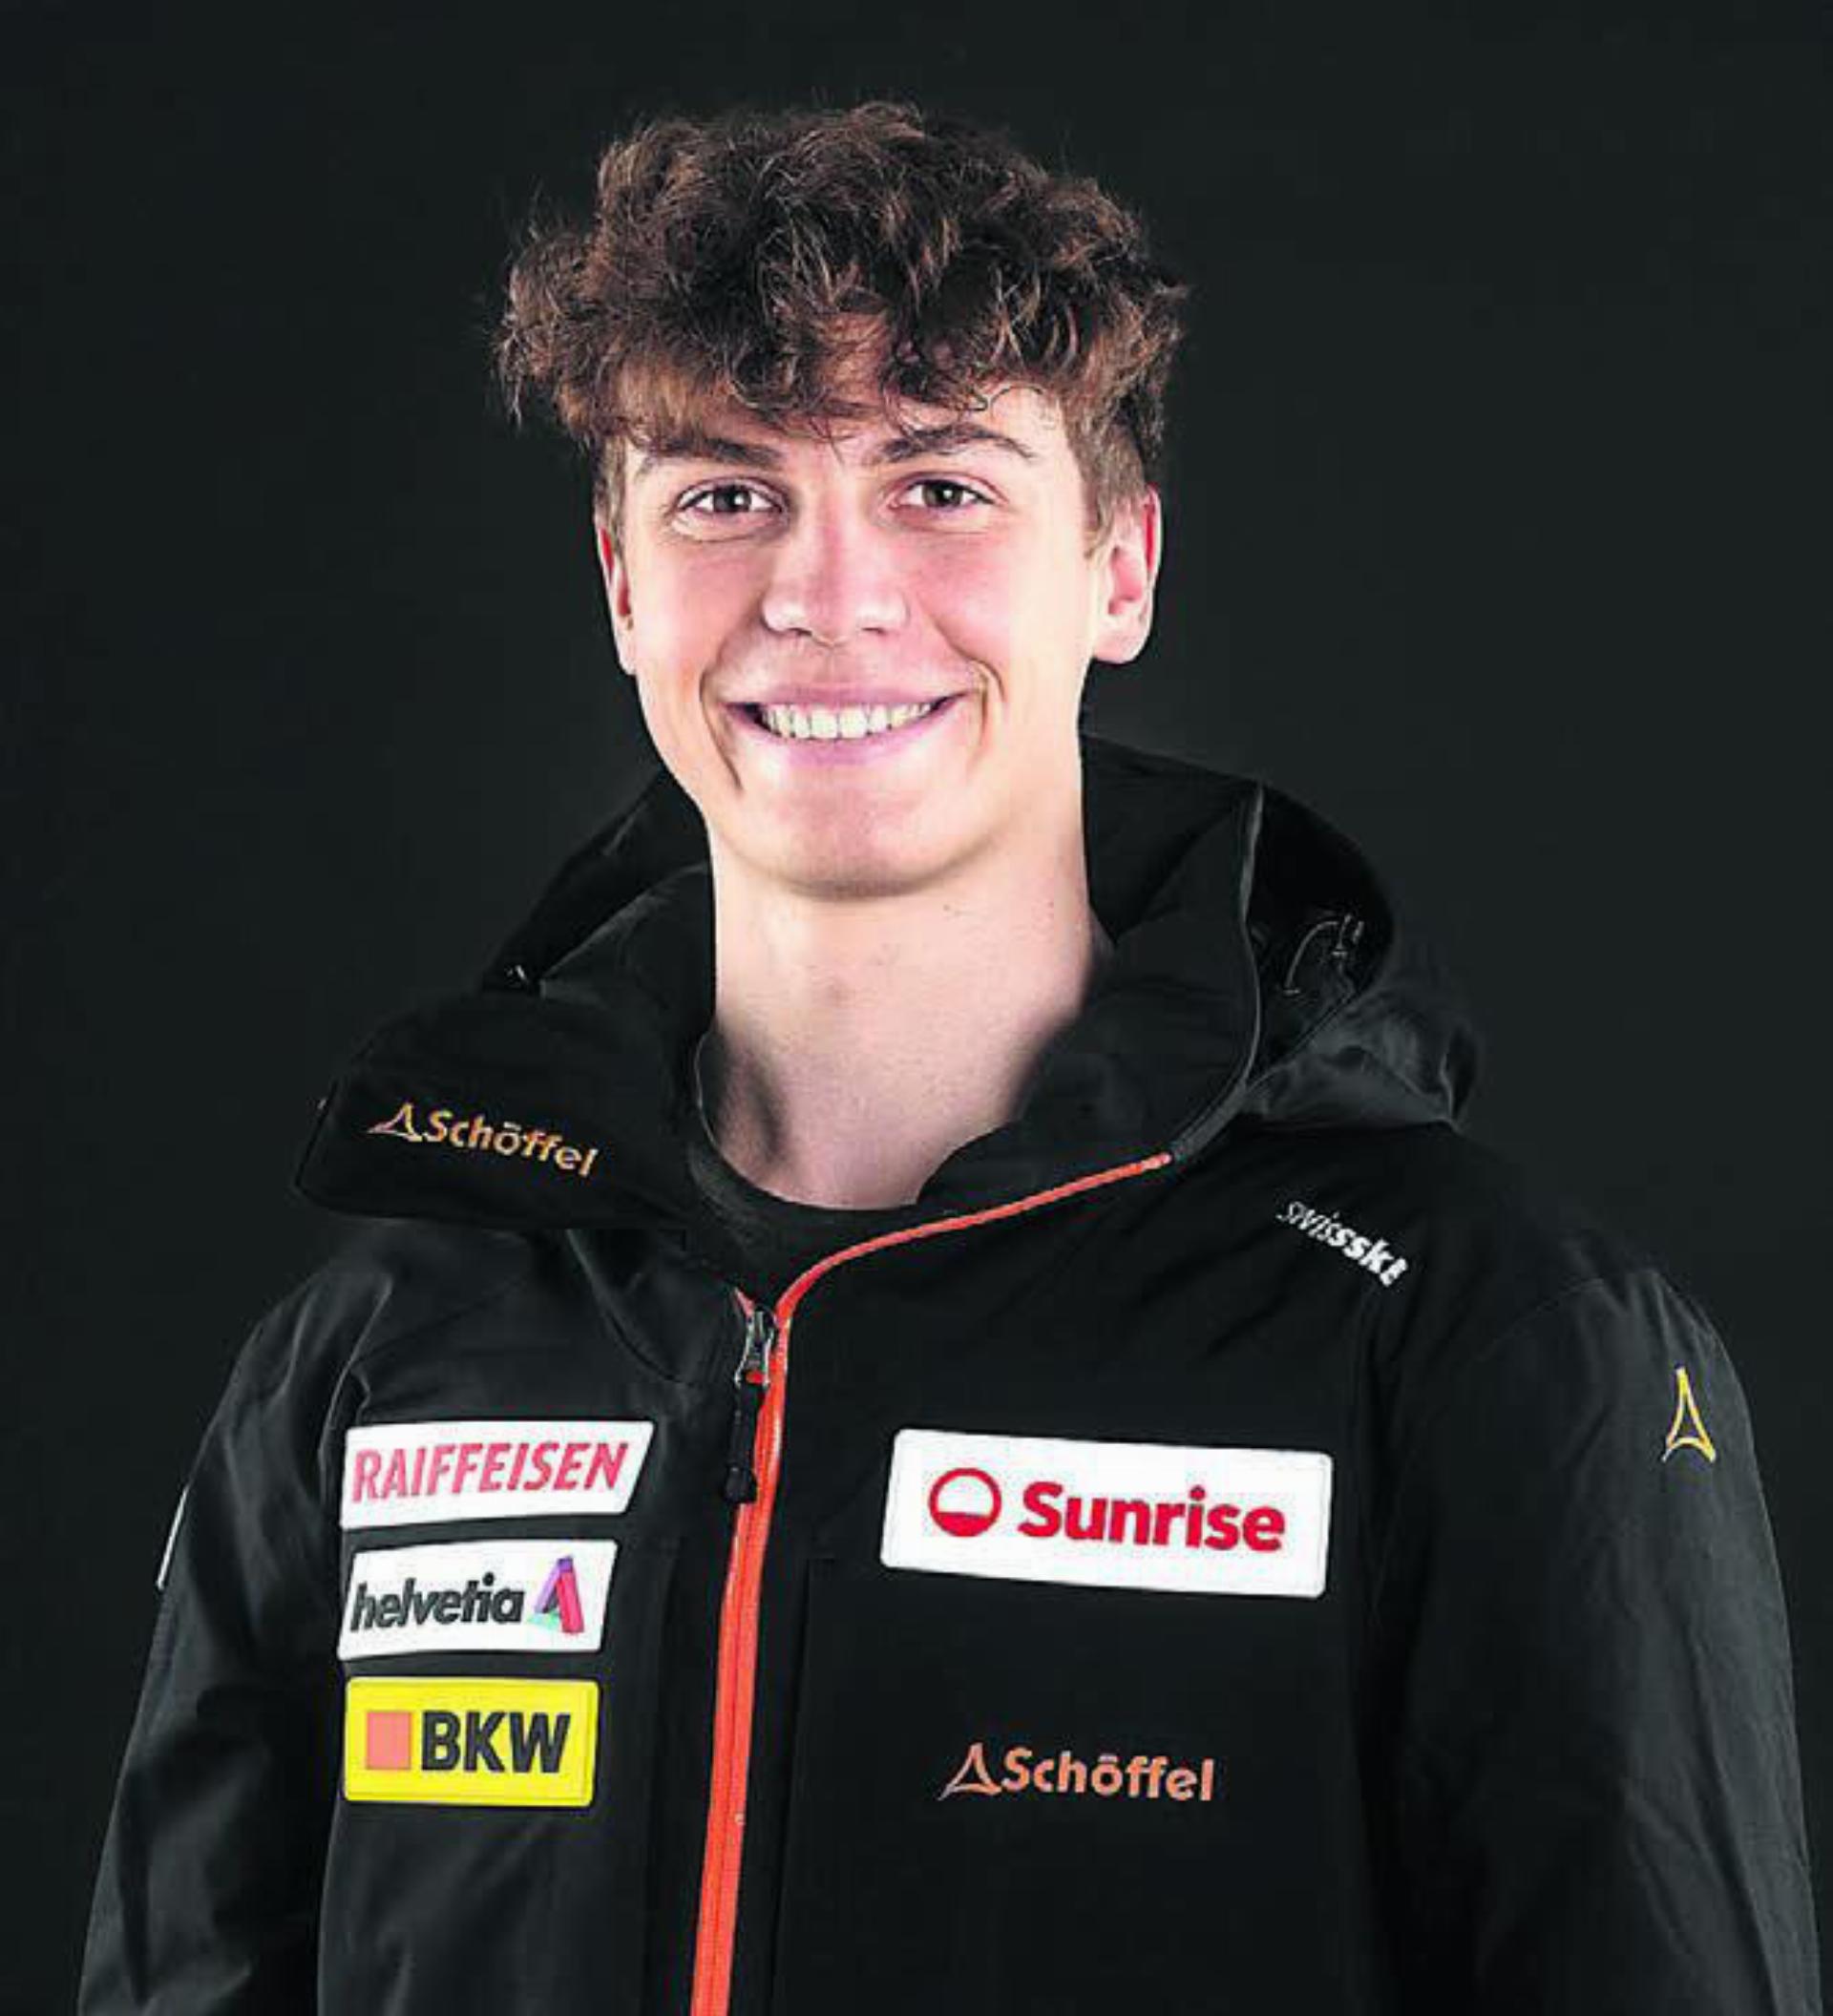 Gelingt ihm der Sprung ins Nationalteam nicht, könnte er die Unterstützung durch Swiss Ski verlieren: Fabian Bader. Bilder: Swiss Ski / zg